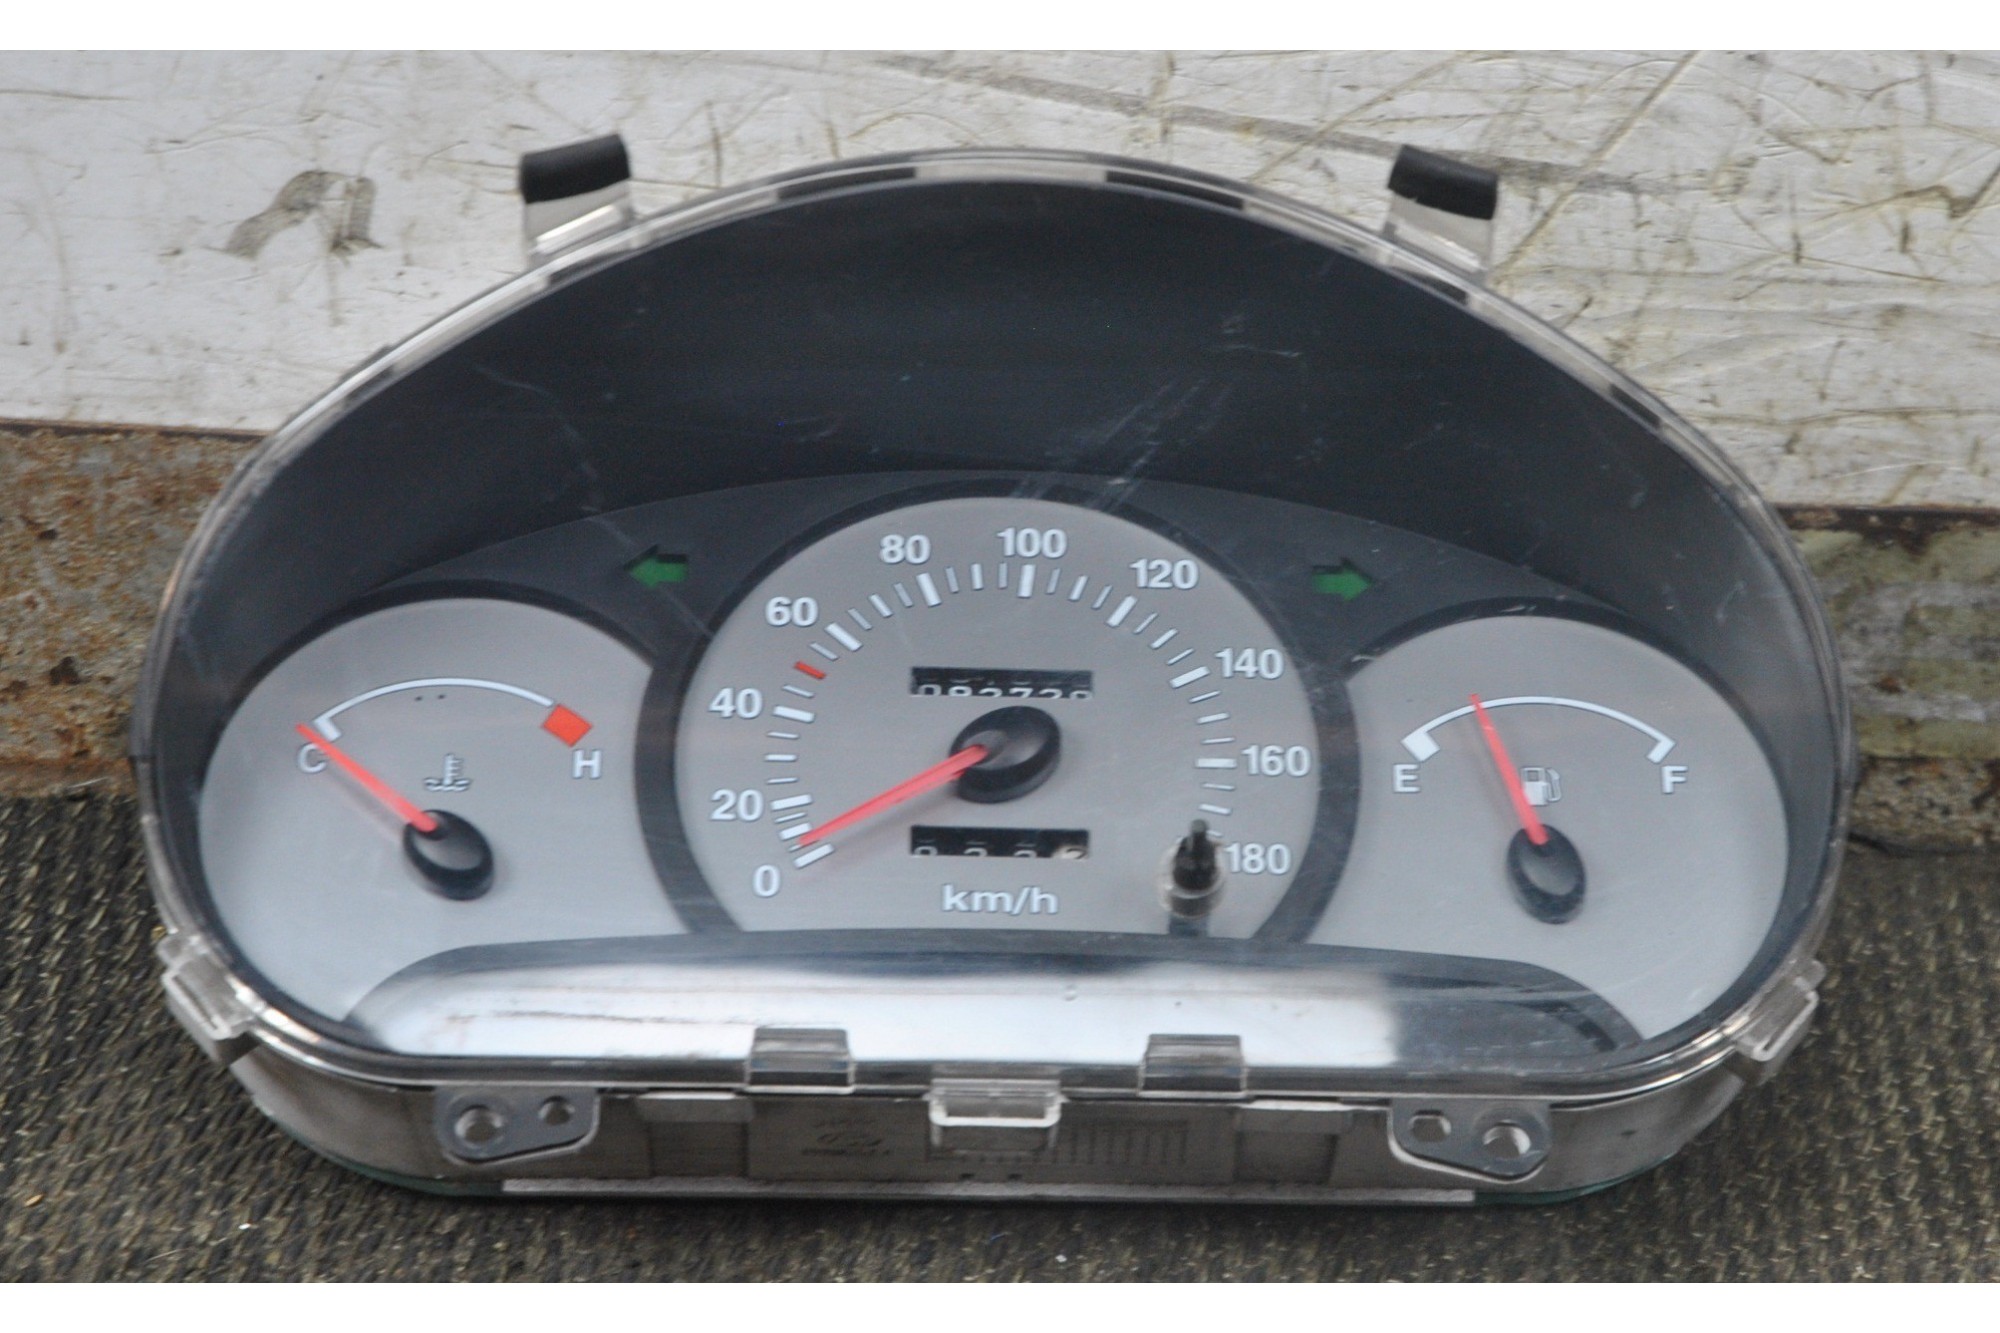 Strumentazione Contachilometri Completa Hyundai Atos Prime dal 1997 al 2008 cod 9400305020  2411111148389